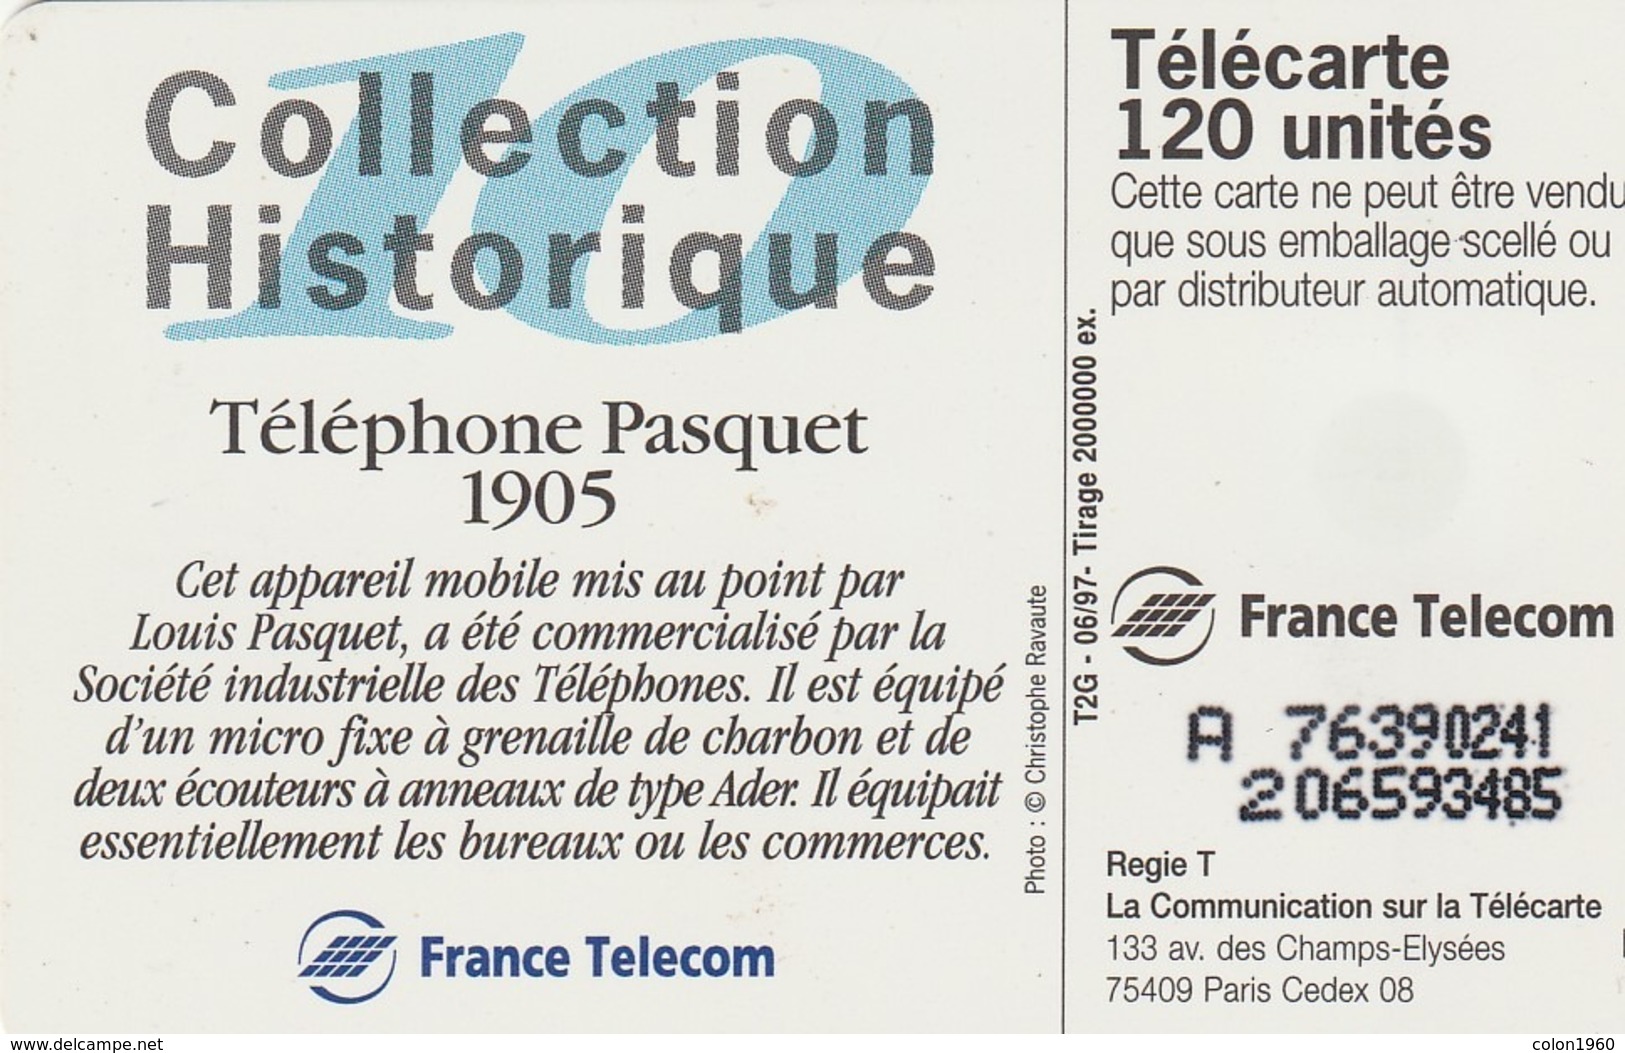 FRANCIA. Collection Historique N. 10 - Téléphone Pasquet 1905. 120U. 06/97. 0753.1. (270). - 1997